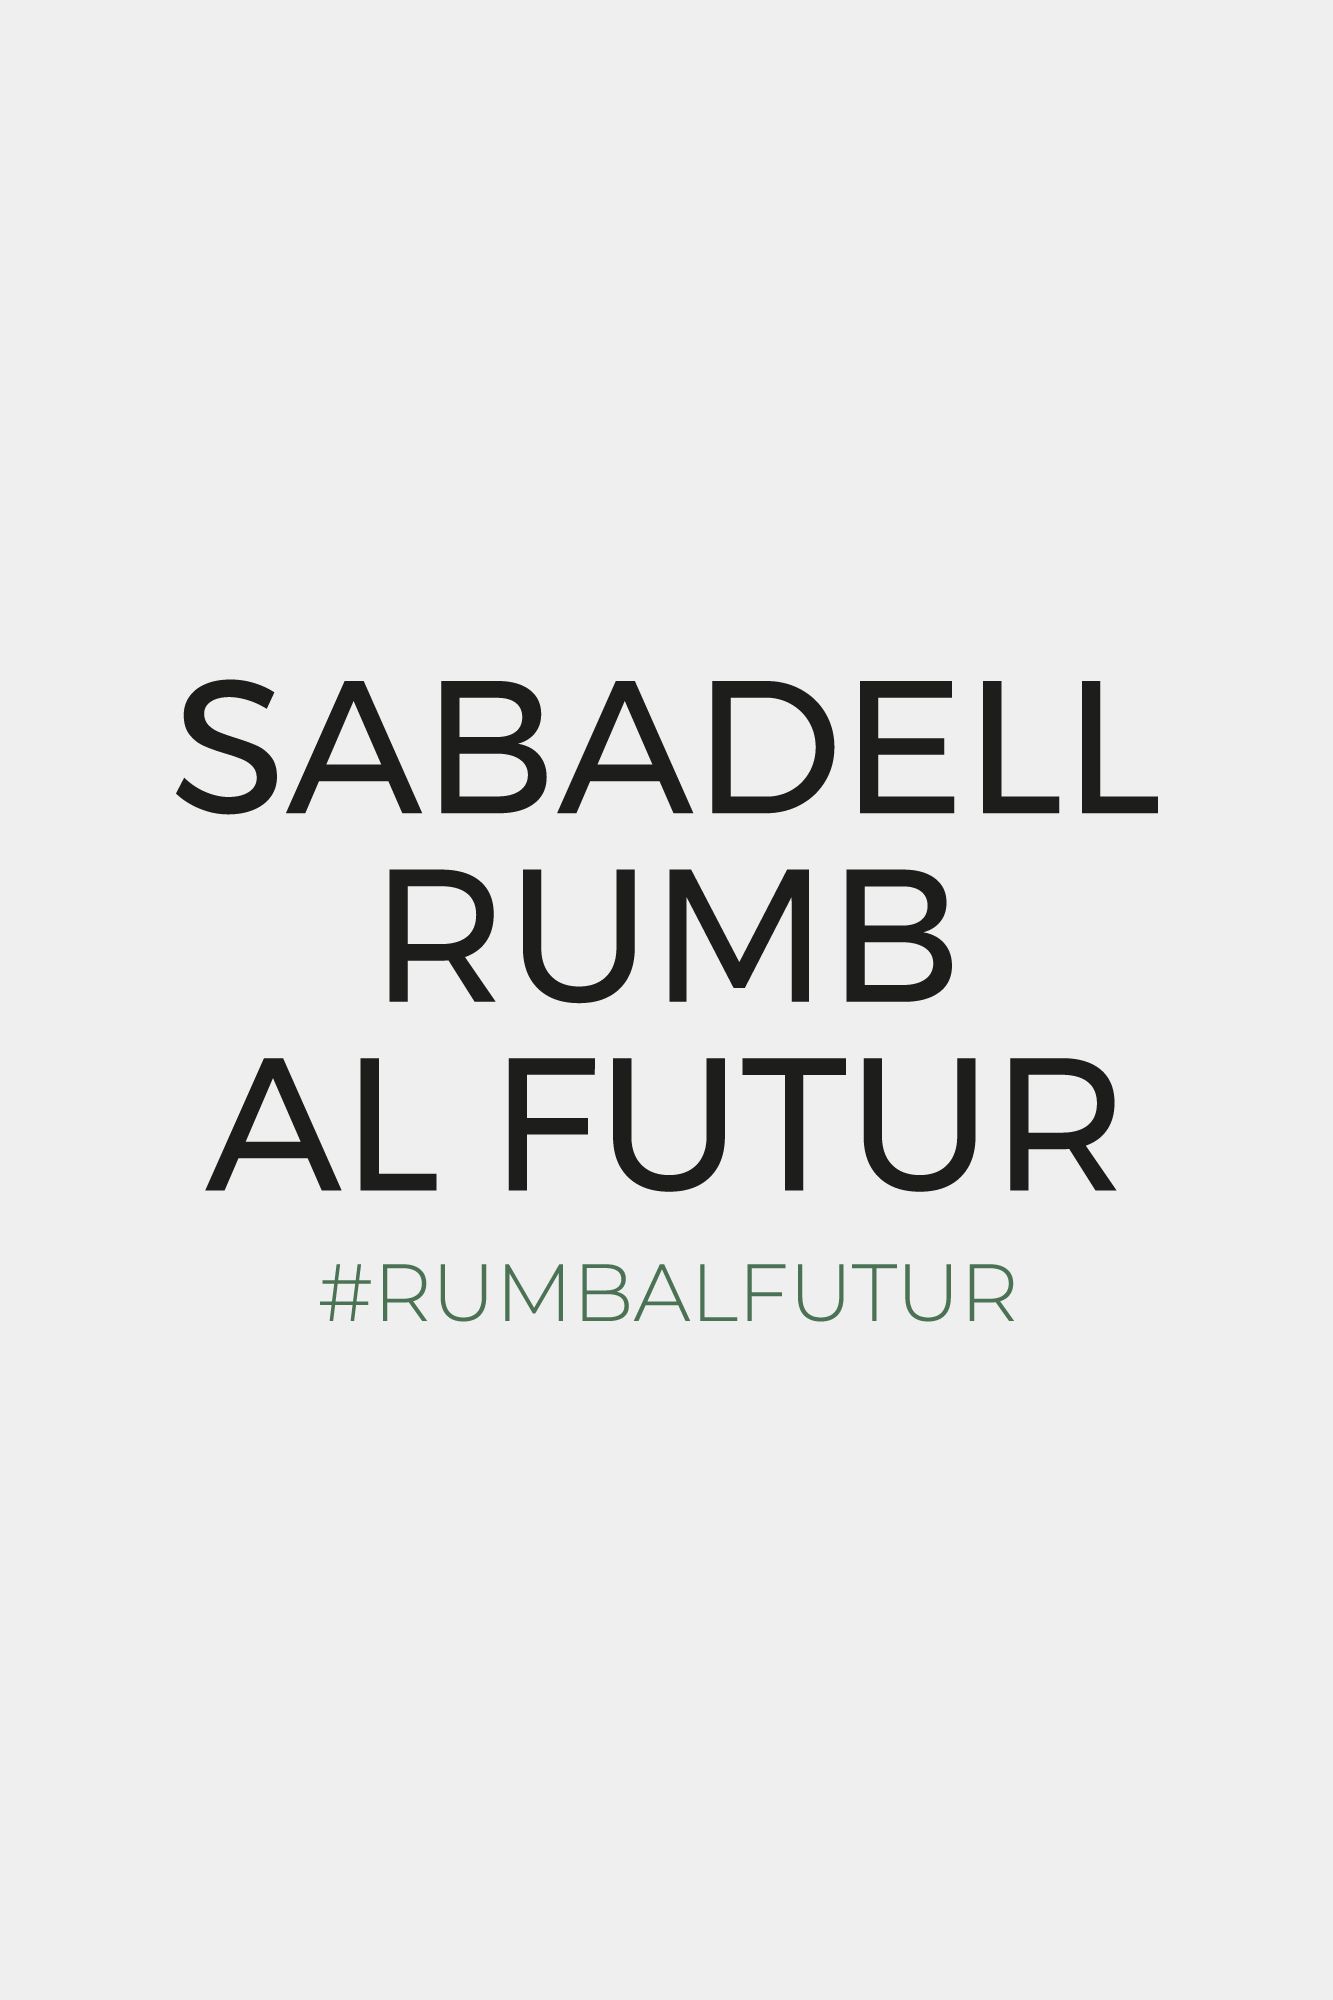 Campanya del ayuntamiento de Sabadell "Sabadell rumb al futur" , titulo de la campaña